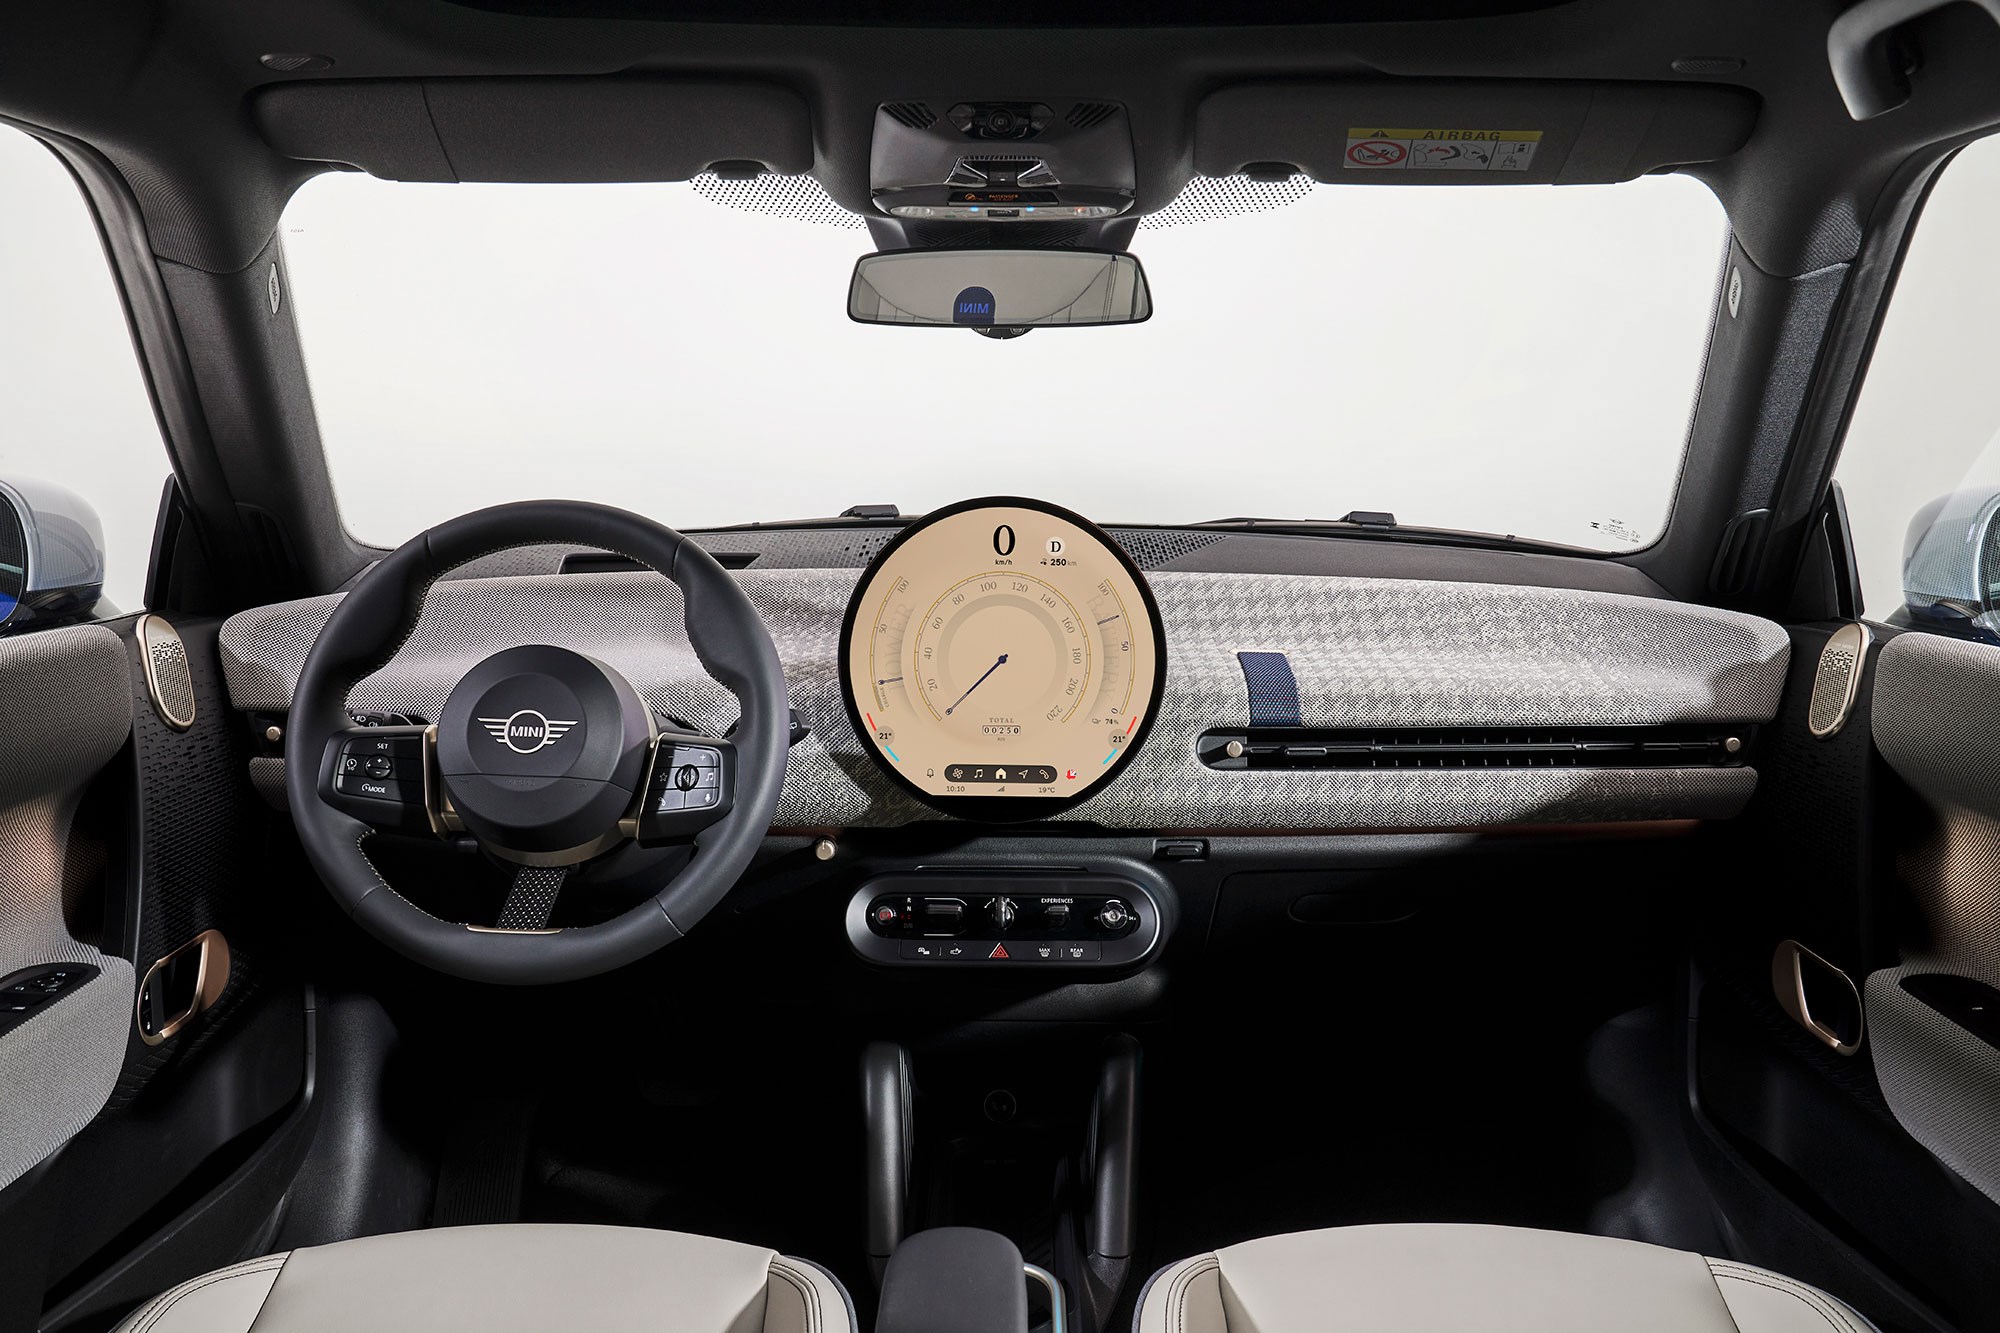 Car Clock bmw mini cooper interior Auto Accessories Dashboard